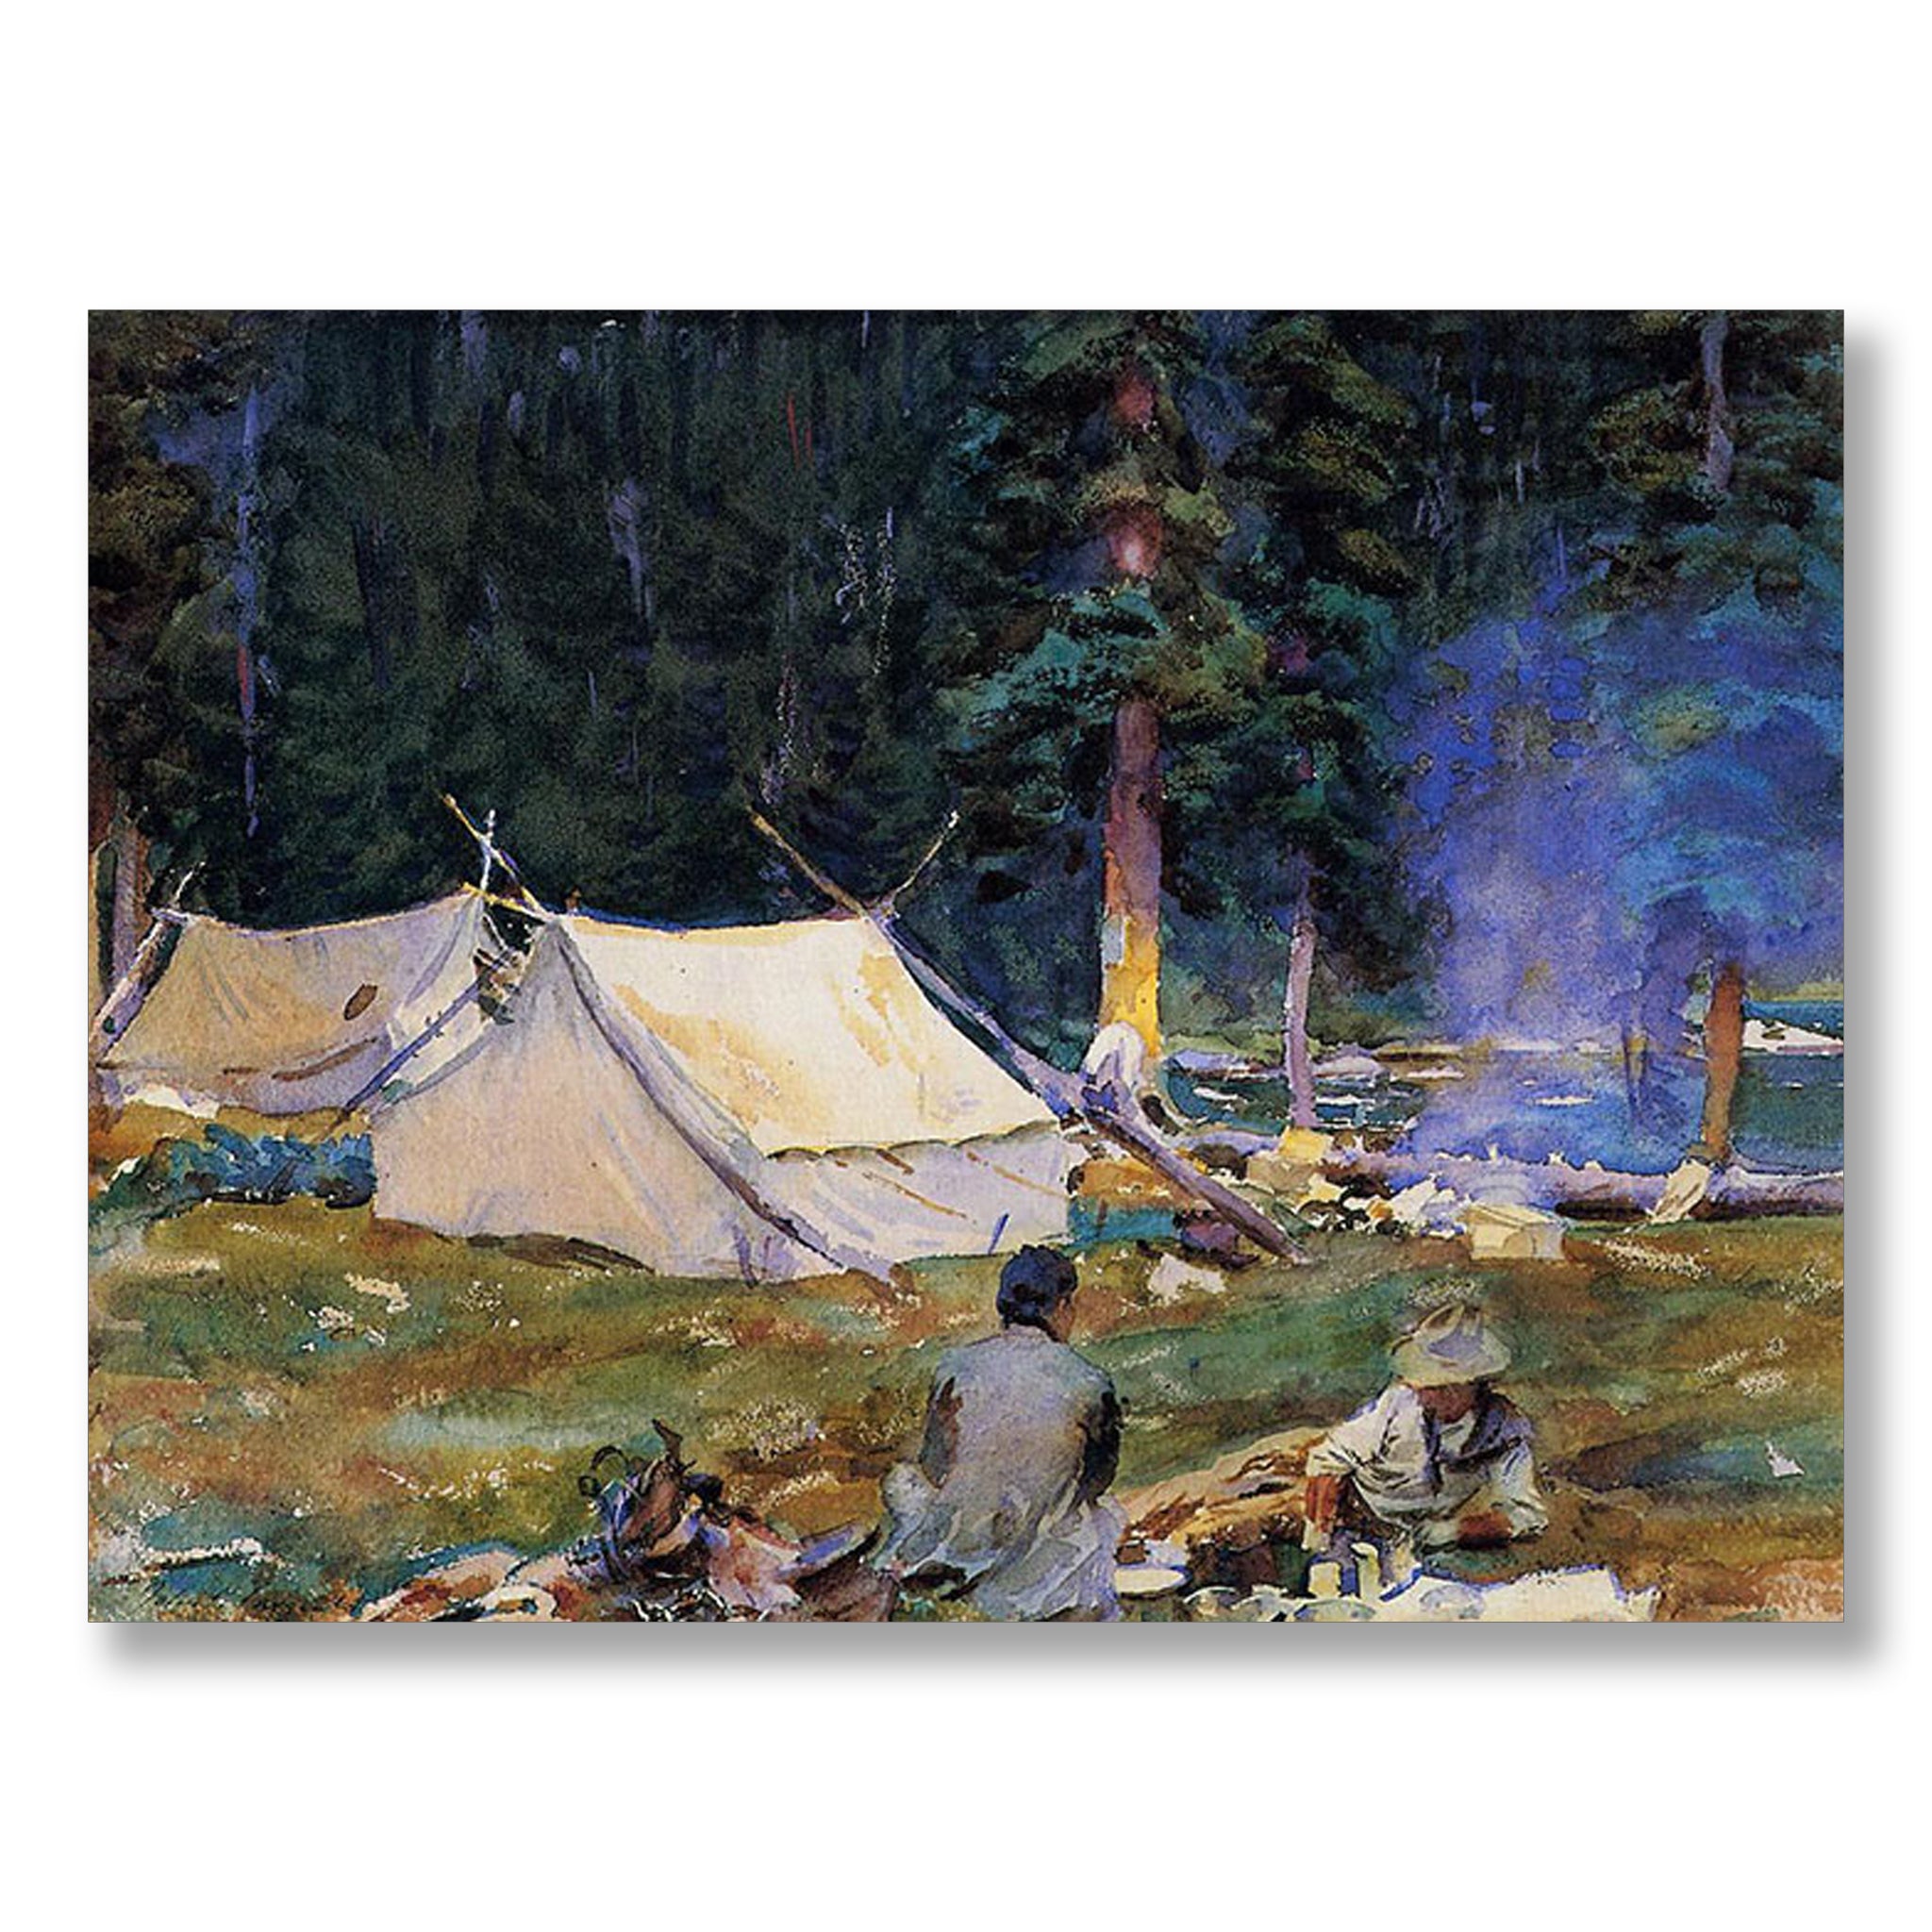 Camping at Lake O'Hara by John Singer Sargent